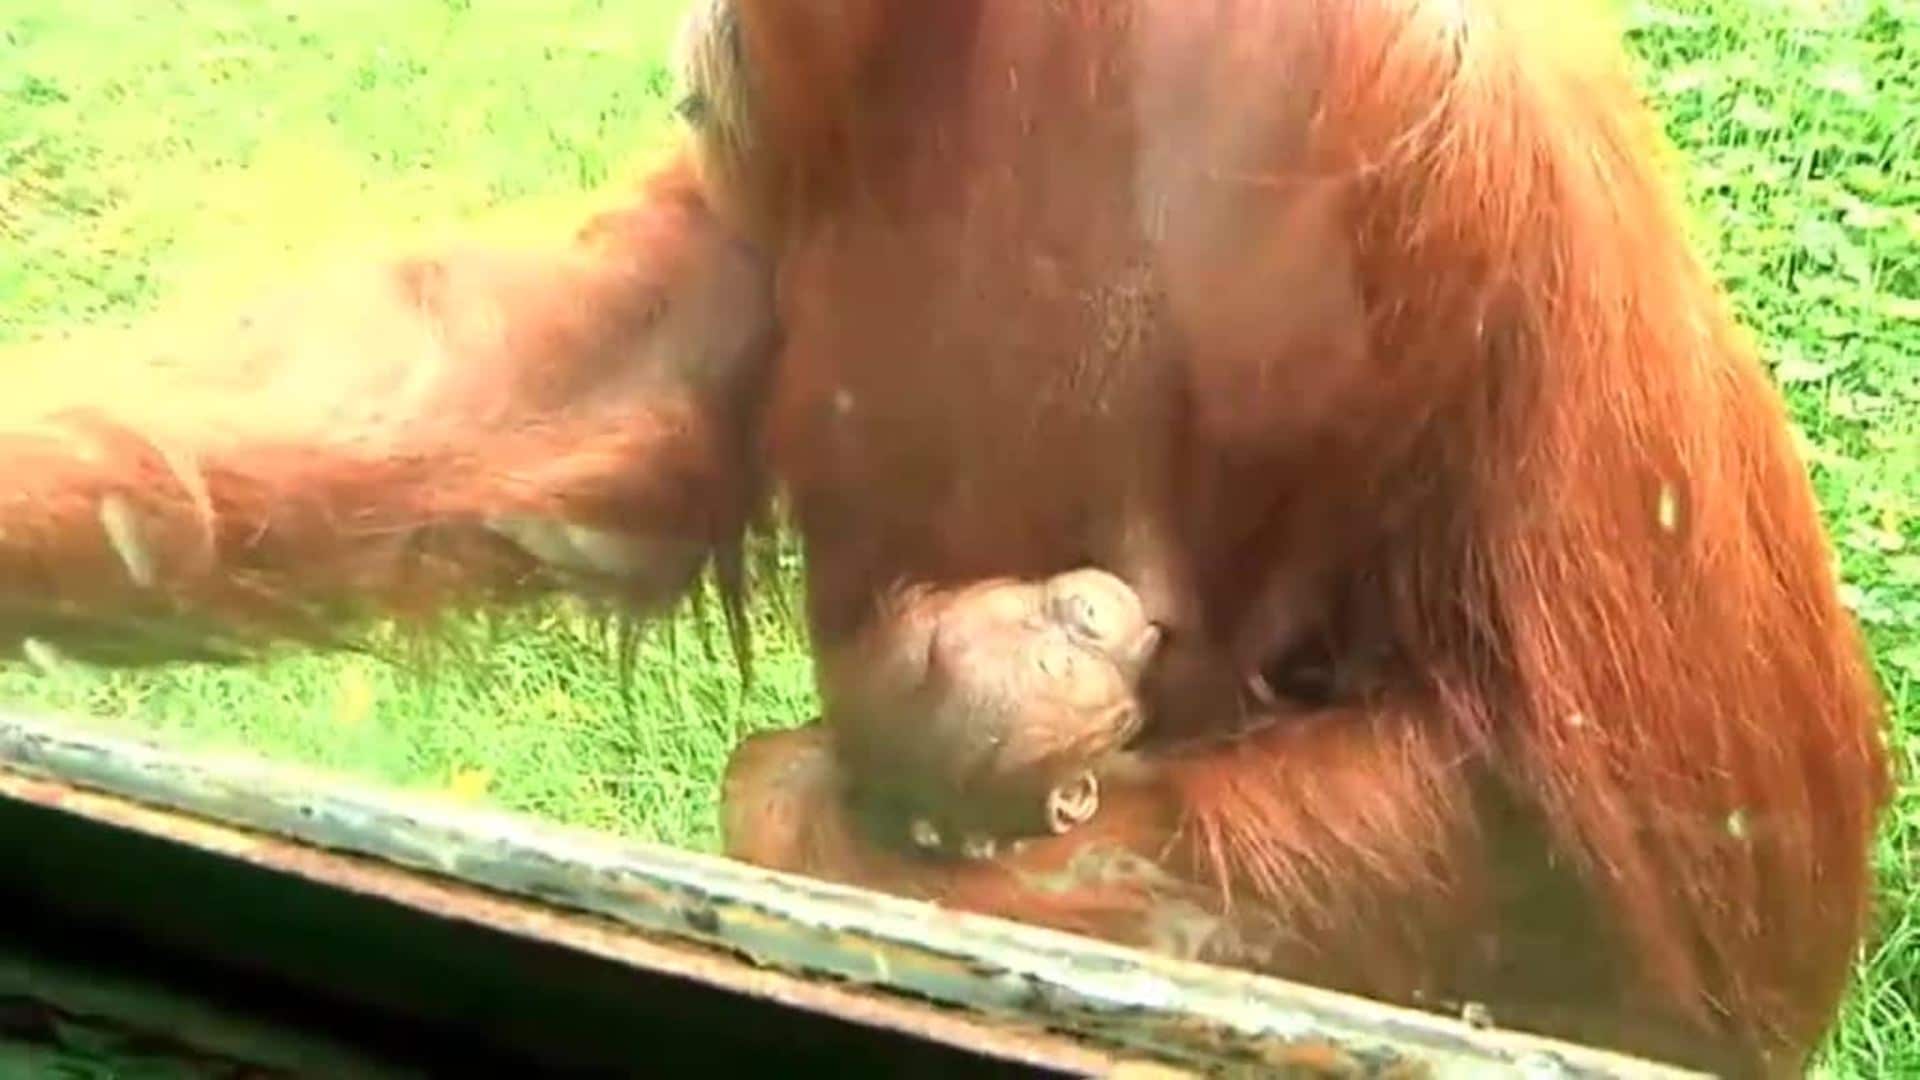 Nace una cría de orangután de Sumatra en el zoo de Santillana del Mar